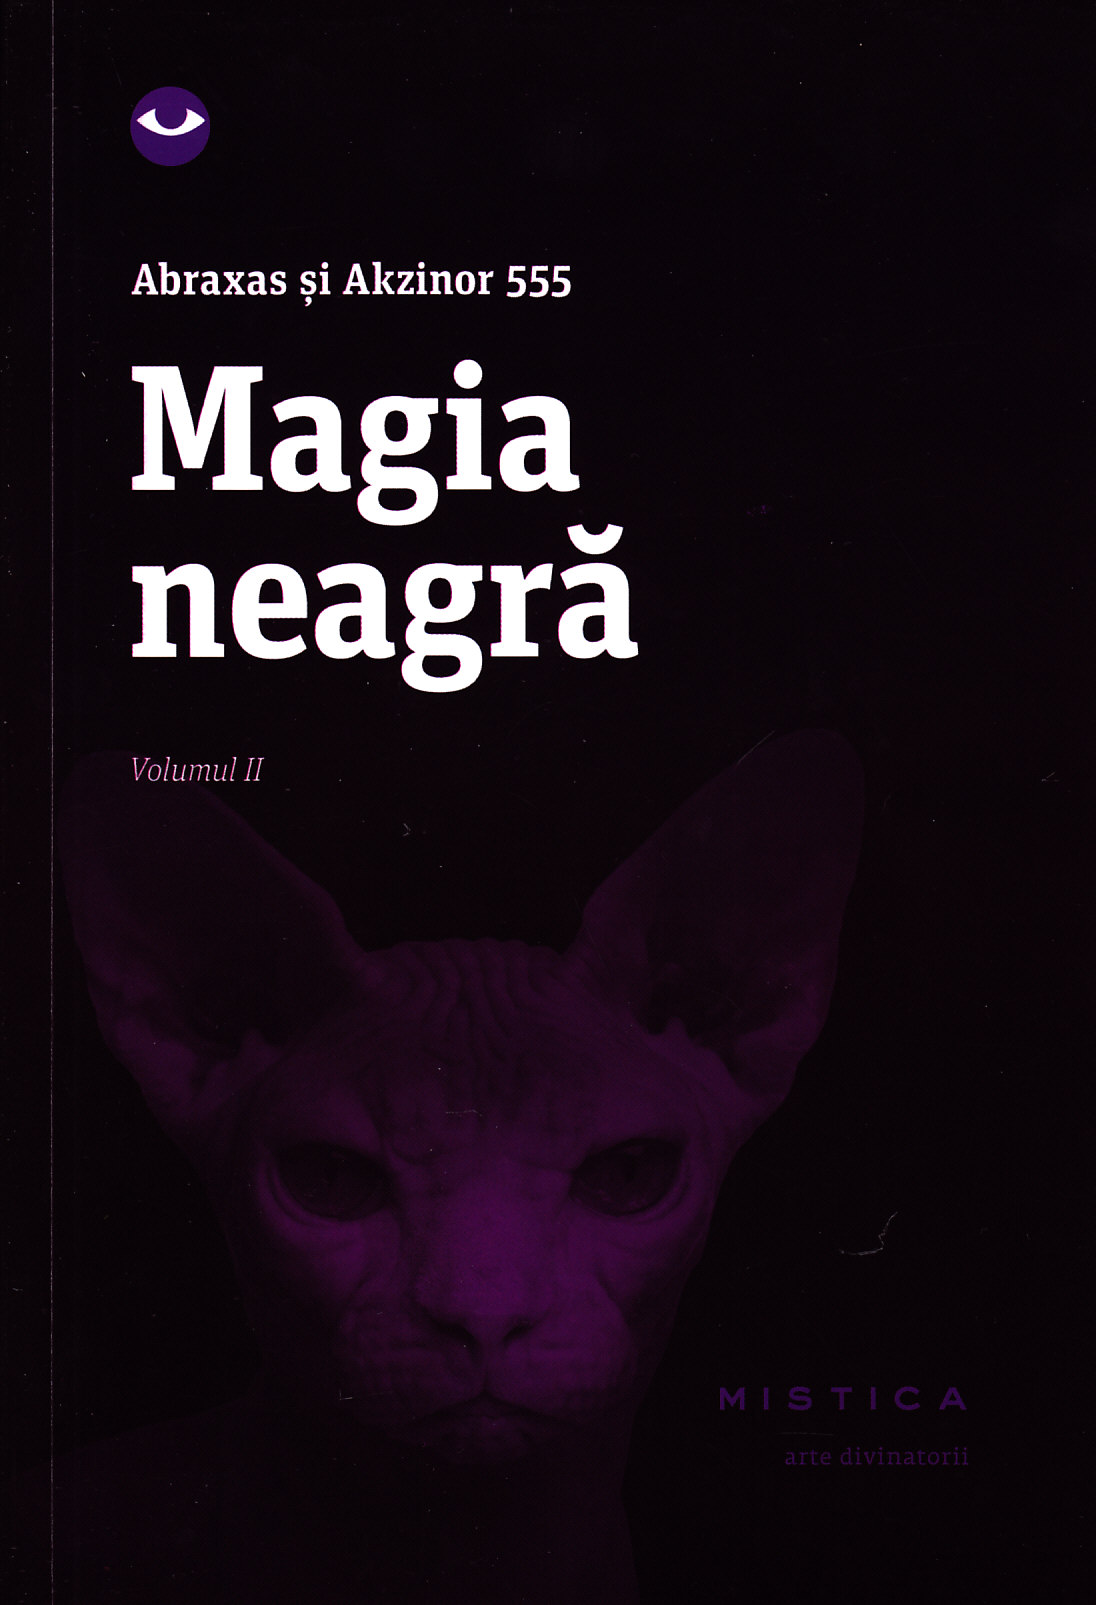 Magia neagra vol.2 - Abraxas Si Akzinor 555